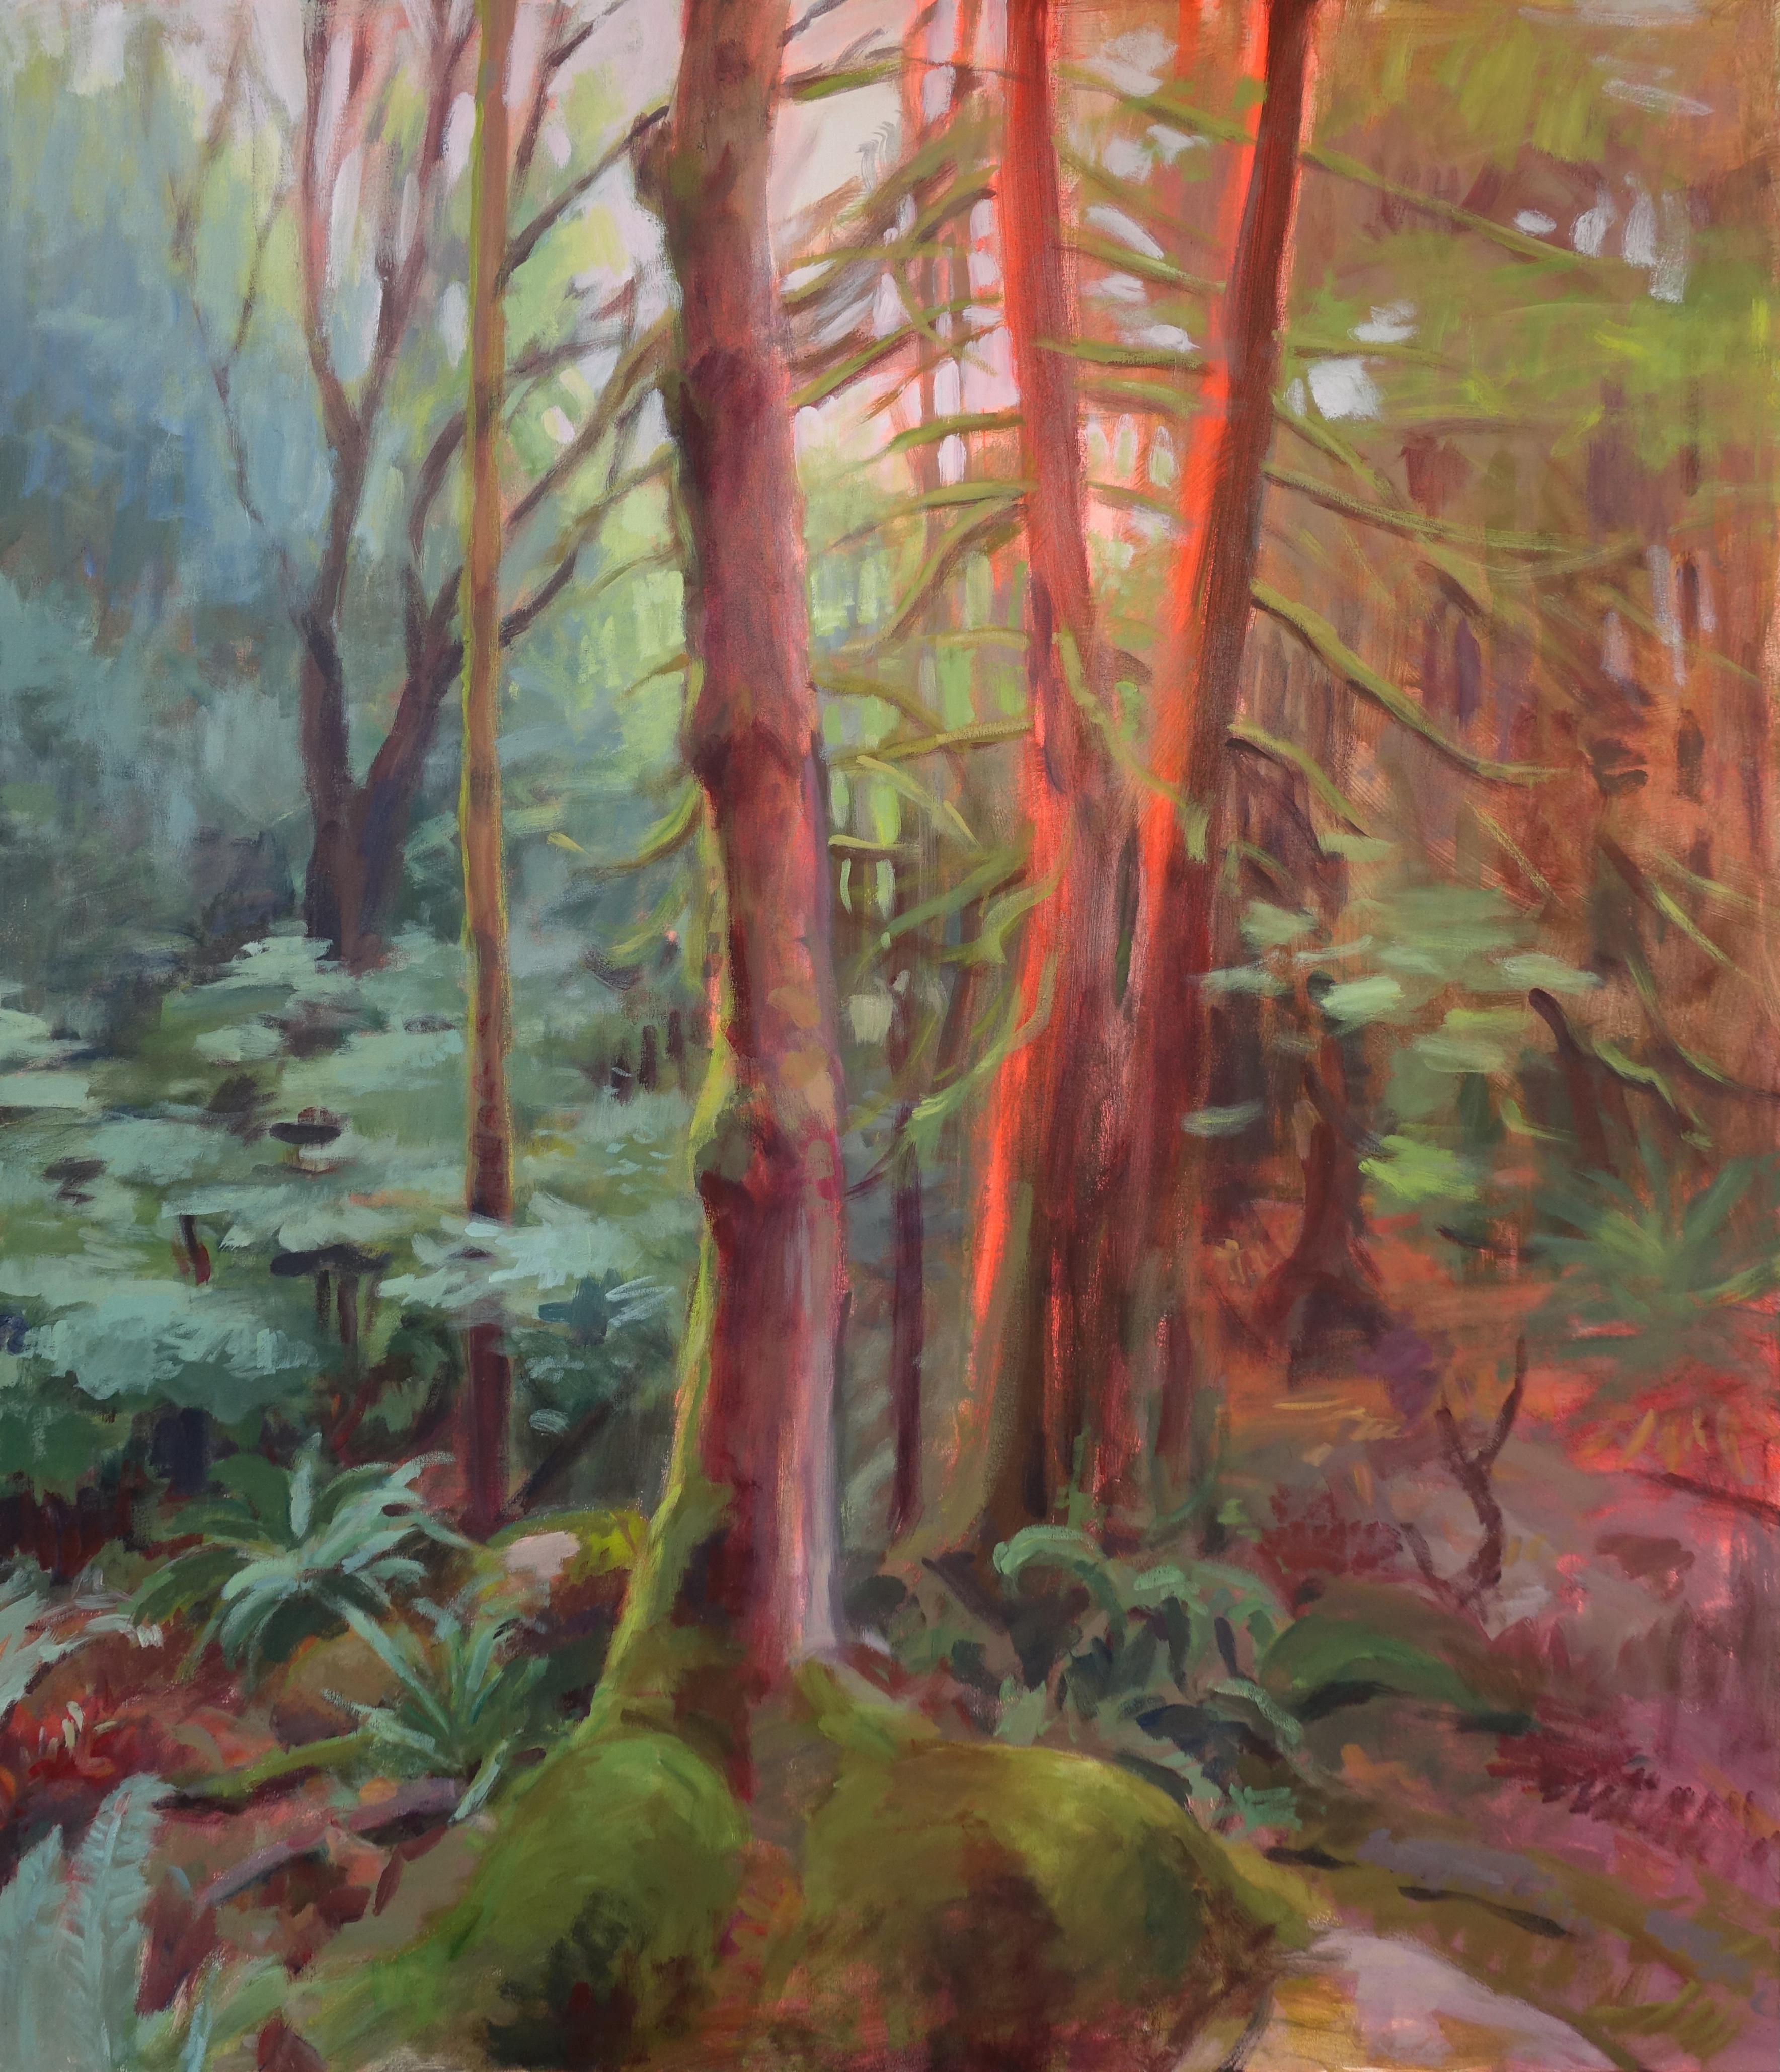 Landscape Painting Amanda Joy Brown - MOSSY TRAIL - Peinture de paysage sereine, lumineuse et magique d'une forêt